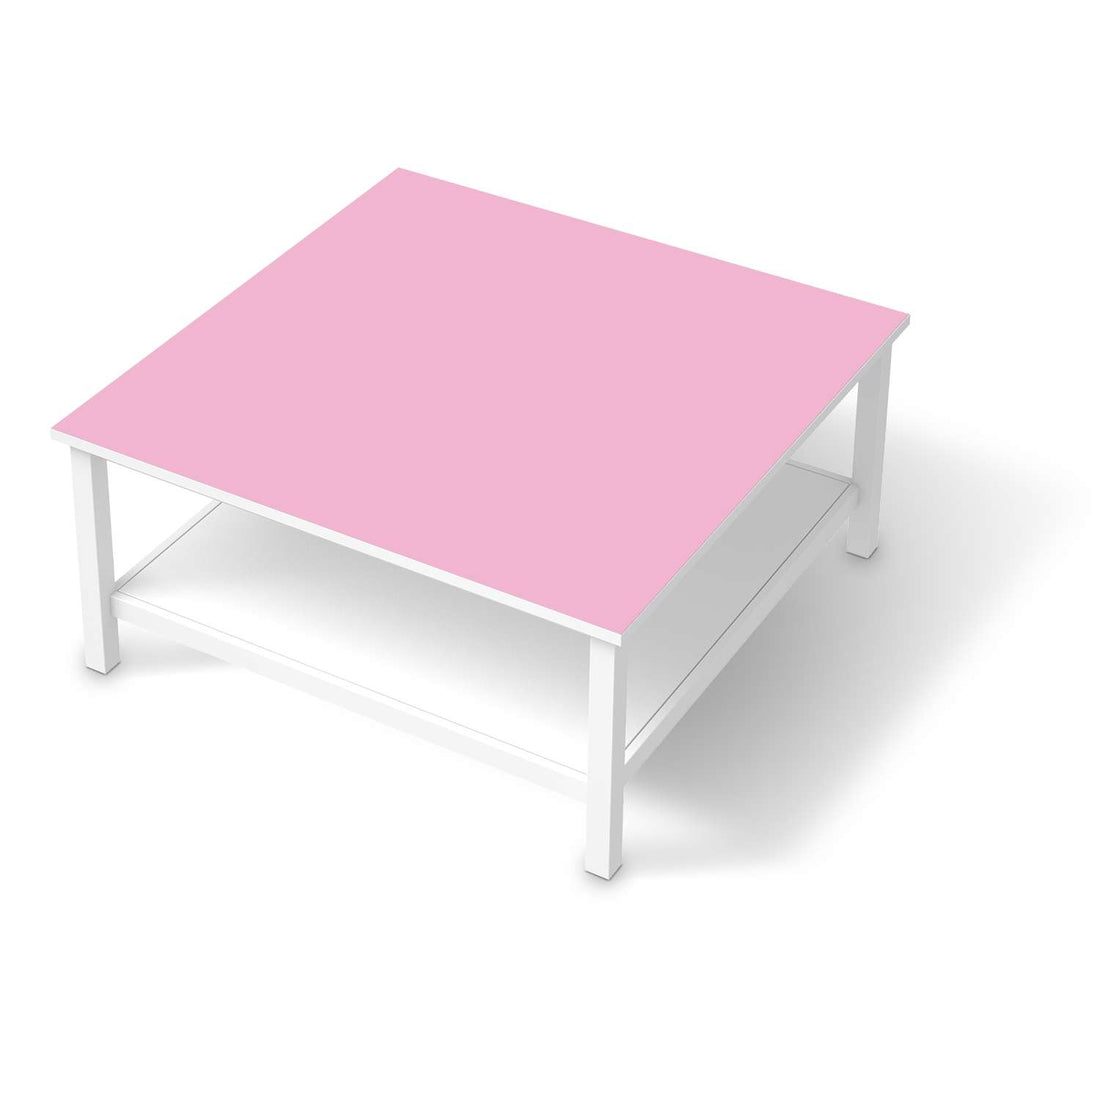 Klebefolie für Möbel Pink Light - IKEA Hemnes Couchtisch 90x90 cm  - weiss